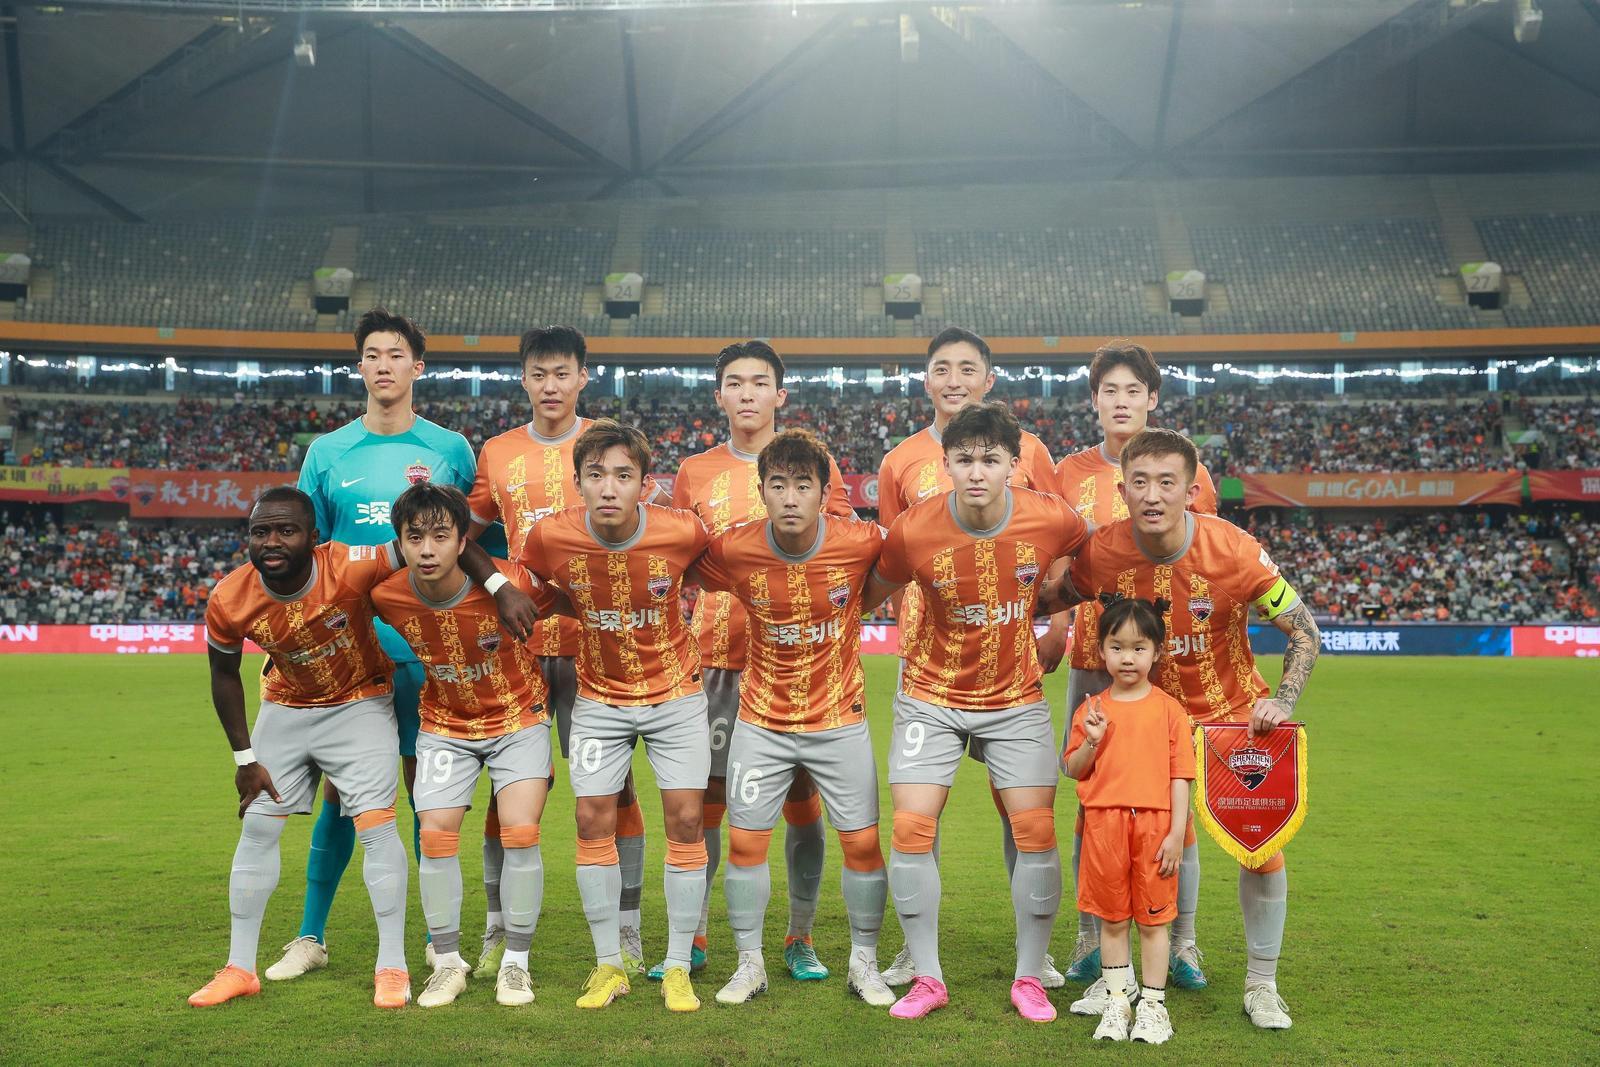 深圳足球俱乐部宣布解散